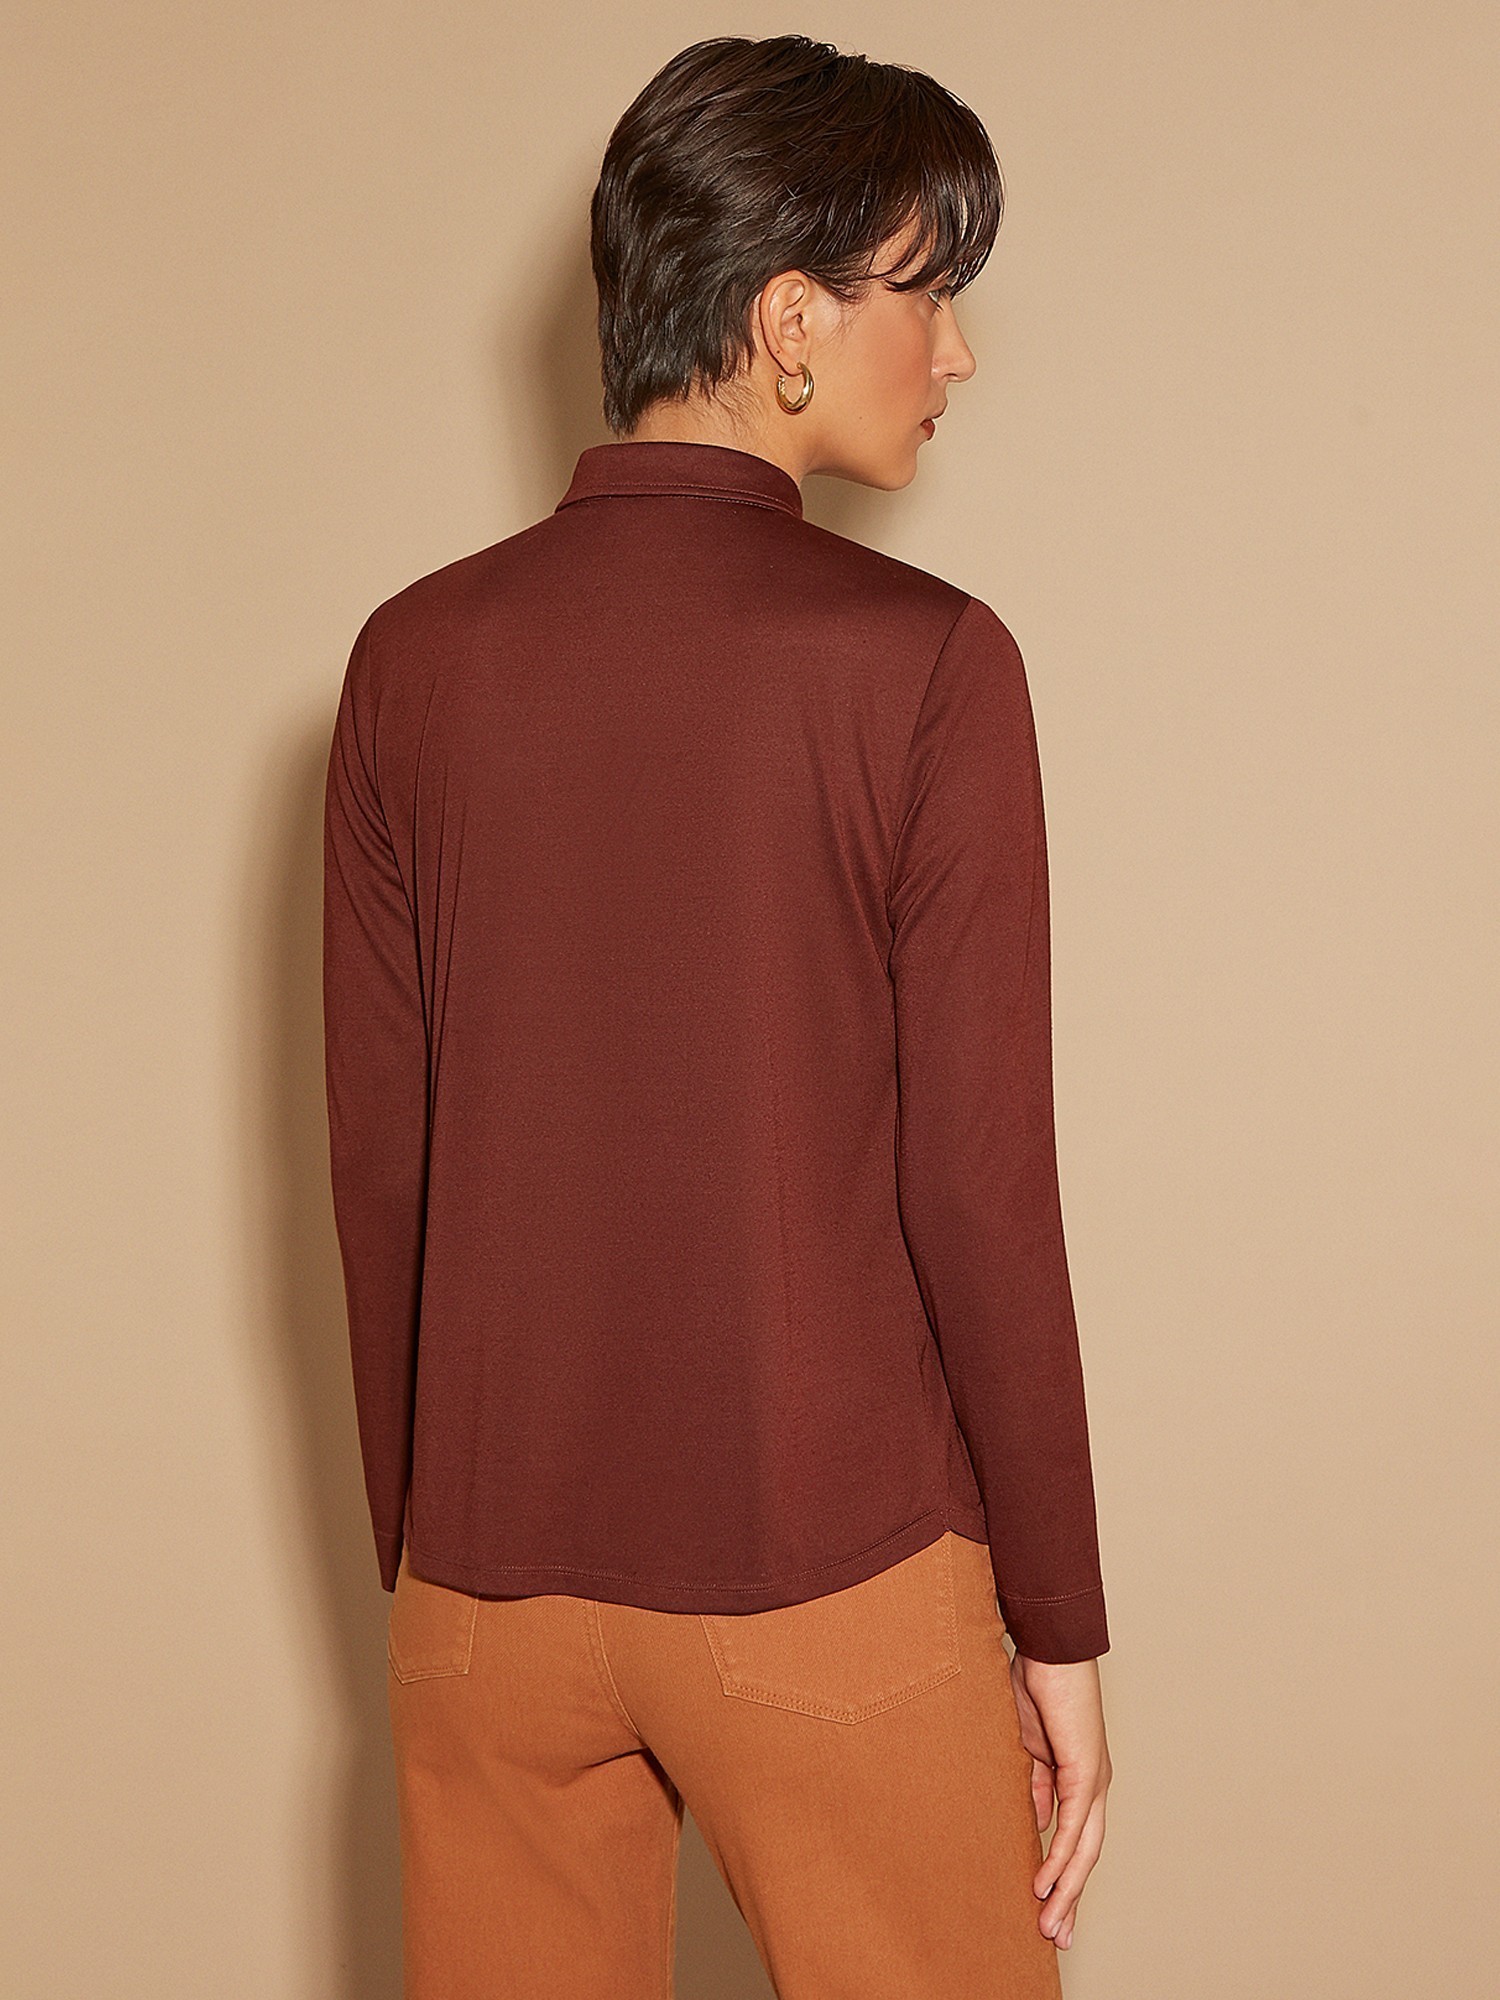 Трикотажная блуза из мягкого модала Elis BL0343K6 - фото 4